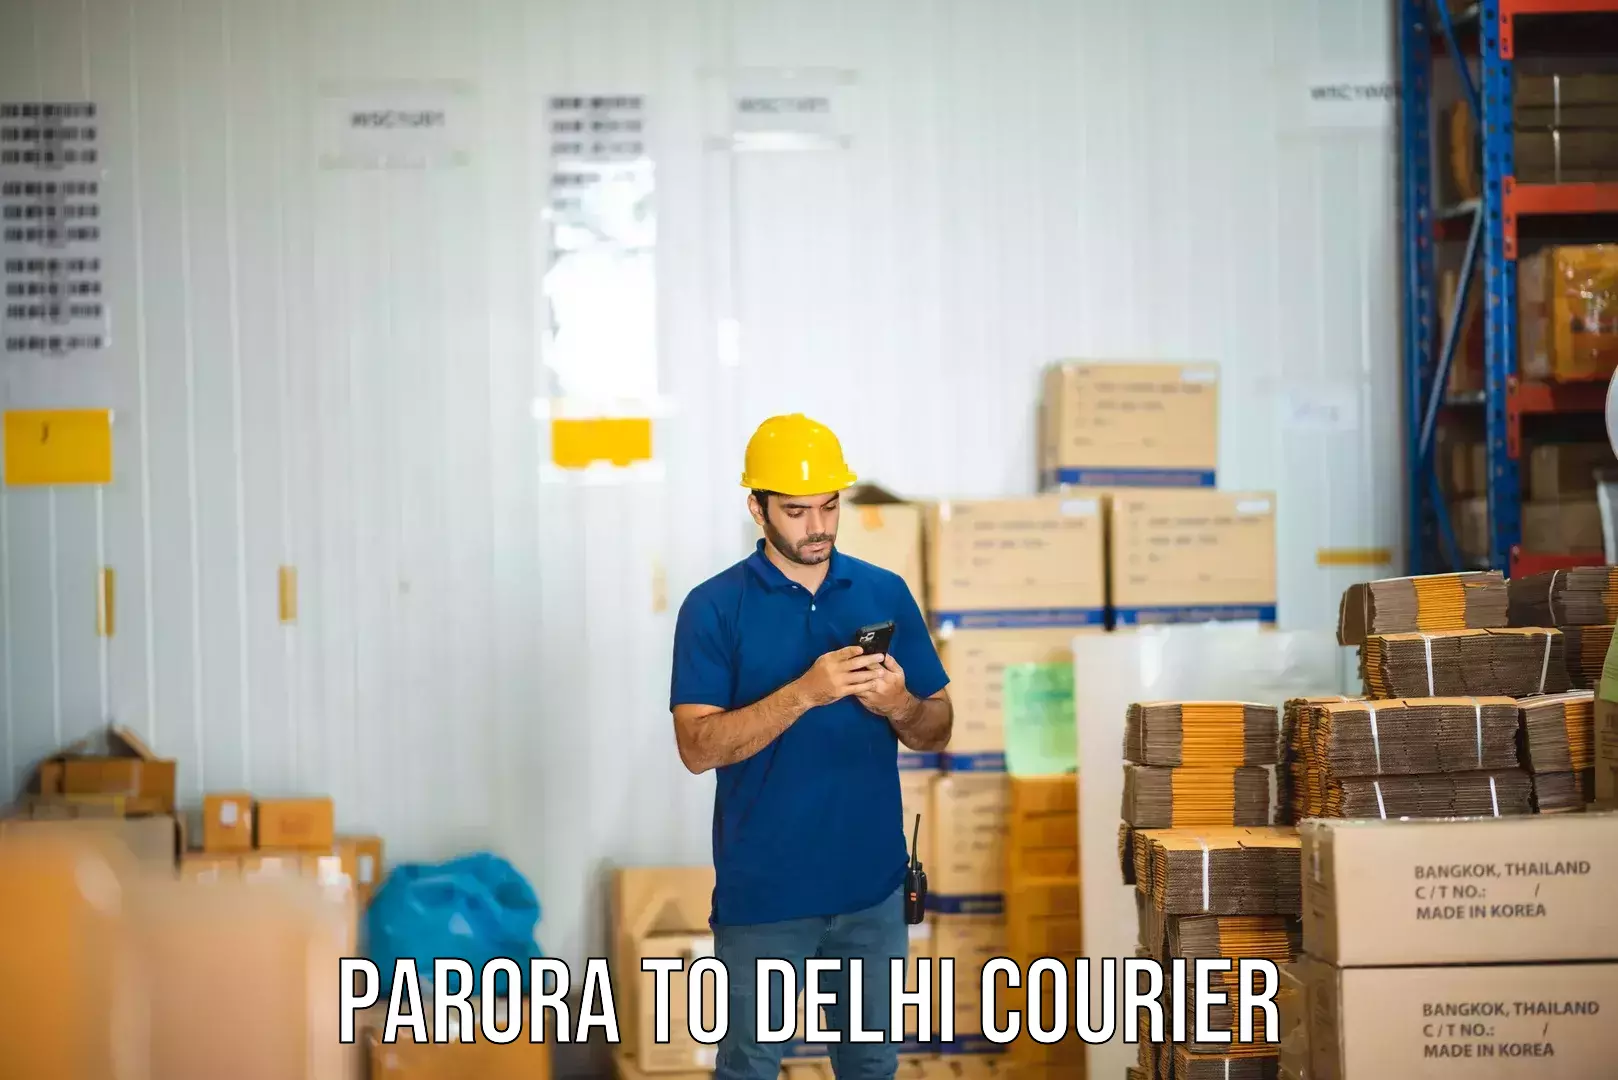 International shipping rates Parora to Ramesh Nagar